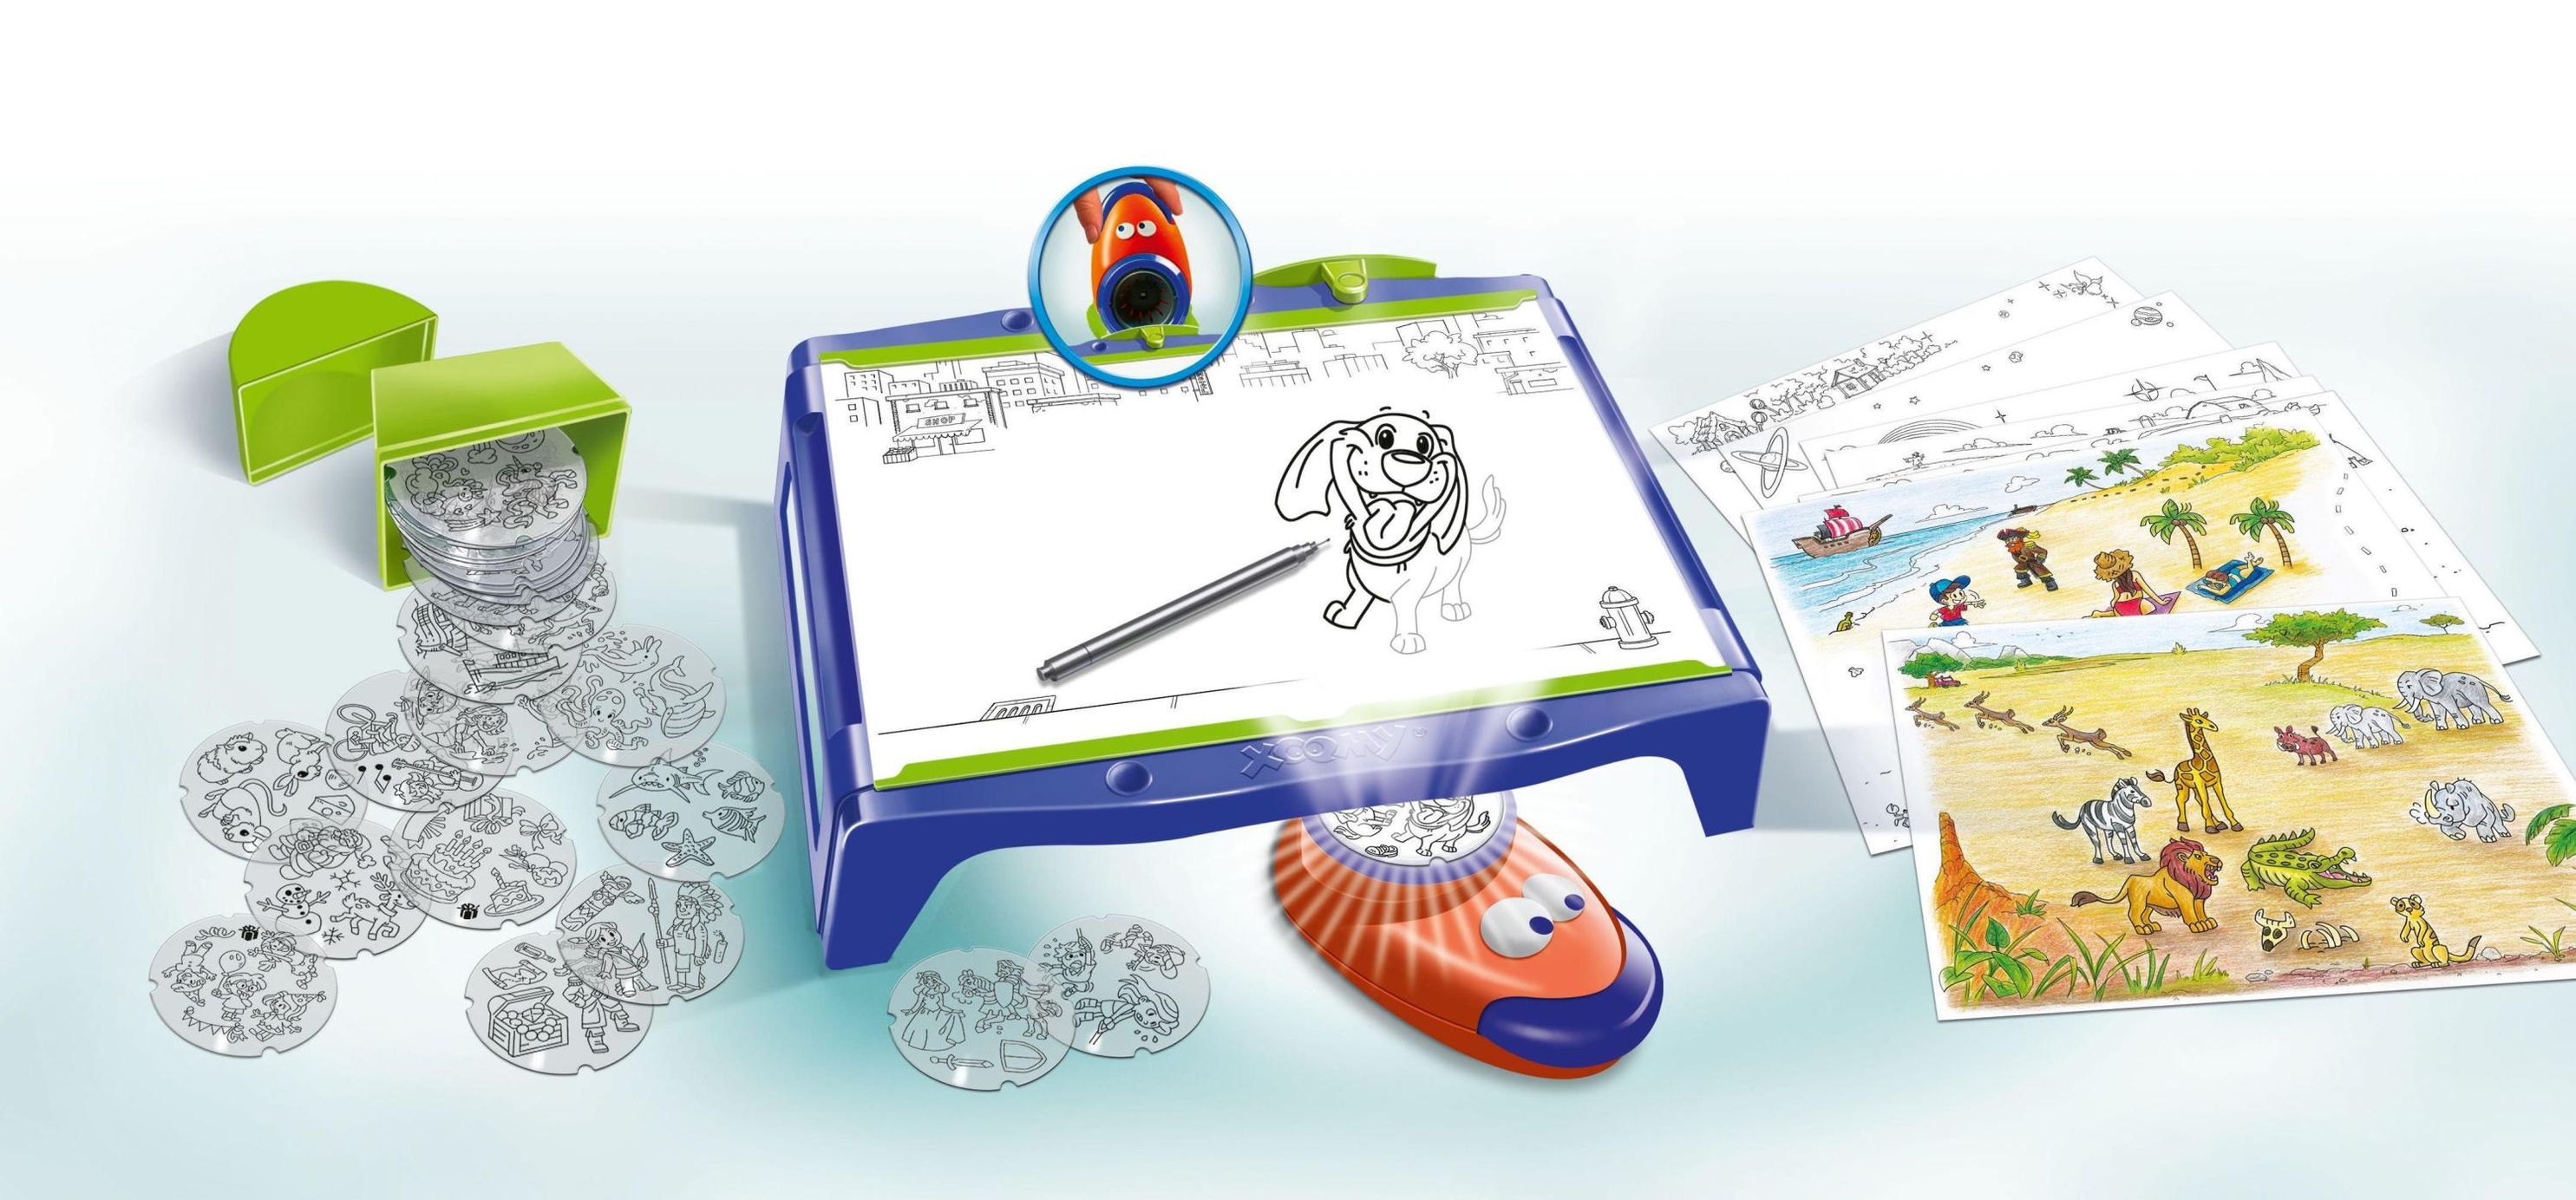 Ravensburger Xoomy Maxi A4 18135 - Zeichnen lernen, Kreatives Zeichnen und  Malen für Kinder ab 6 Jahren, Zeichenset mit über 300 Motiven für  unendlichen Zeichenspaß